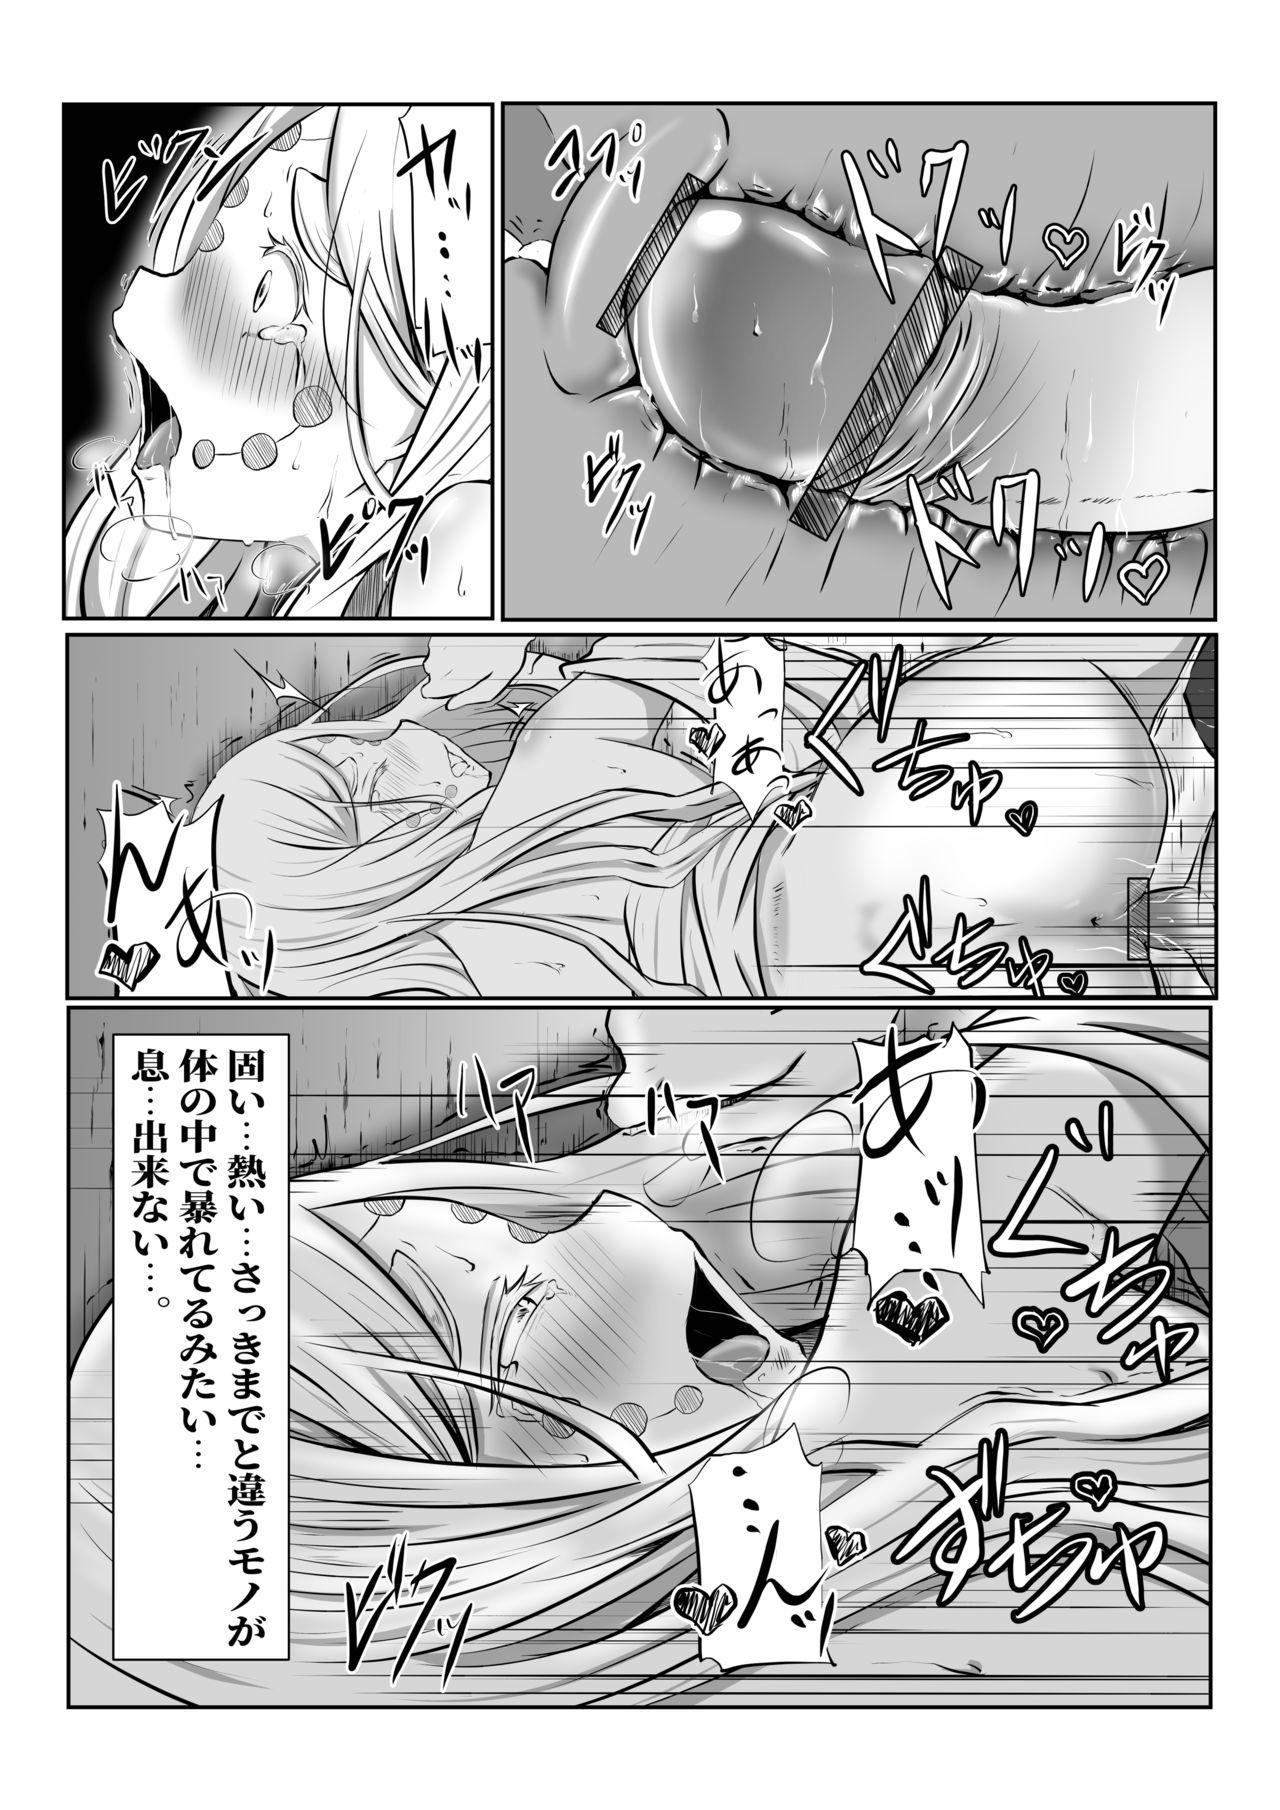 Big Butt Hinokami Sex. - Kimetsu no yaiba | demon slayer Hooker - Page 26